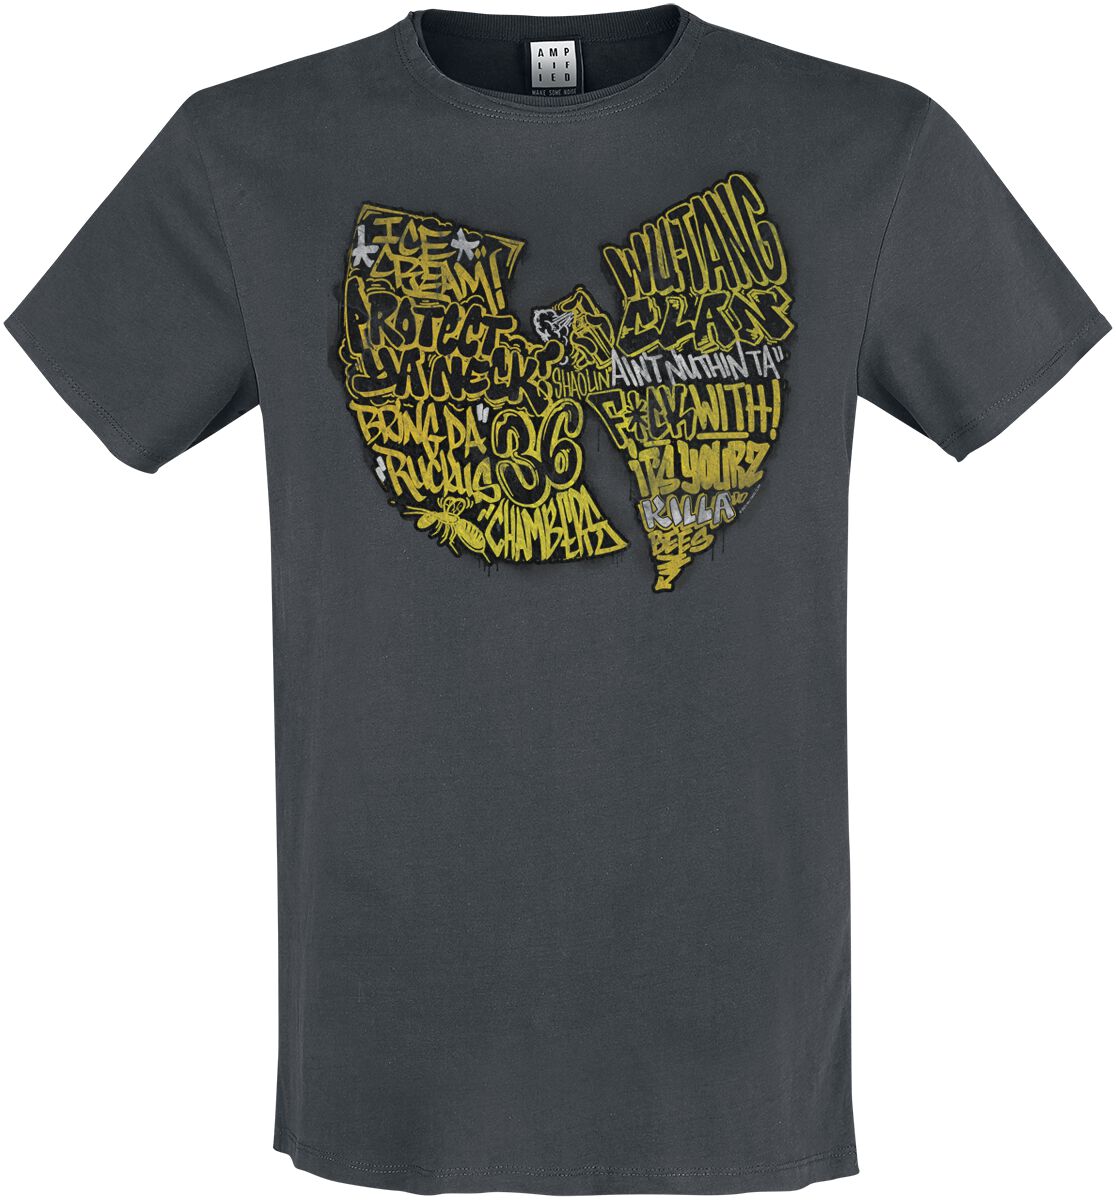 Wu-Tang Clan T-Shirt - Amplified Collection - Graffiti Logo - S bis 3XL - für Männer - Größe XL - charcoal  - Lizenziertes Merchandise!